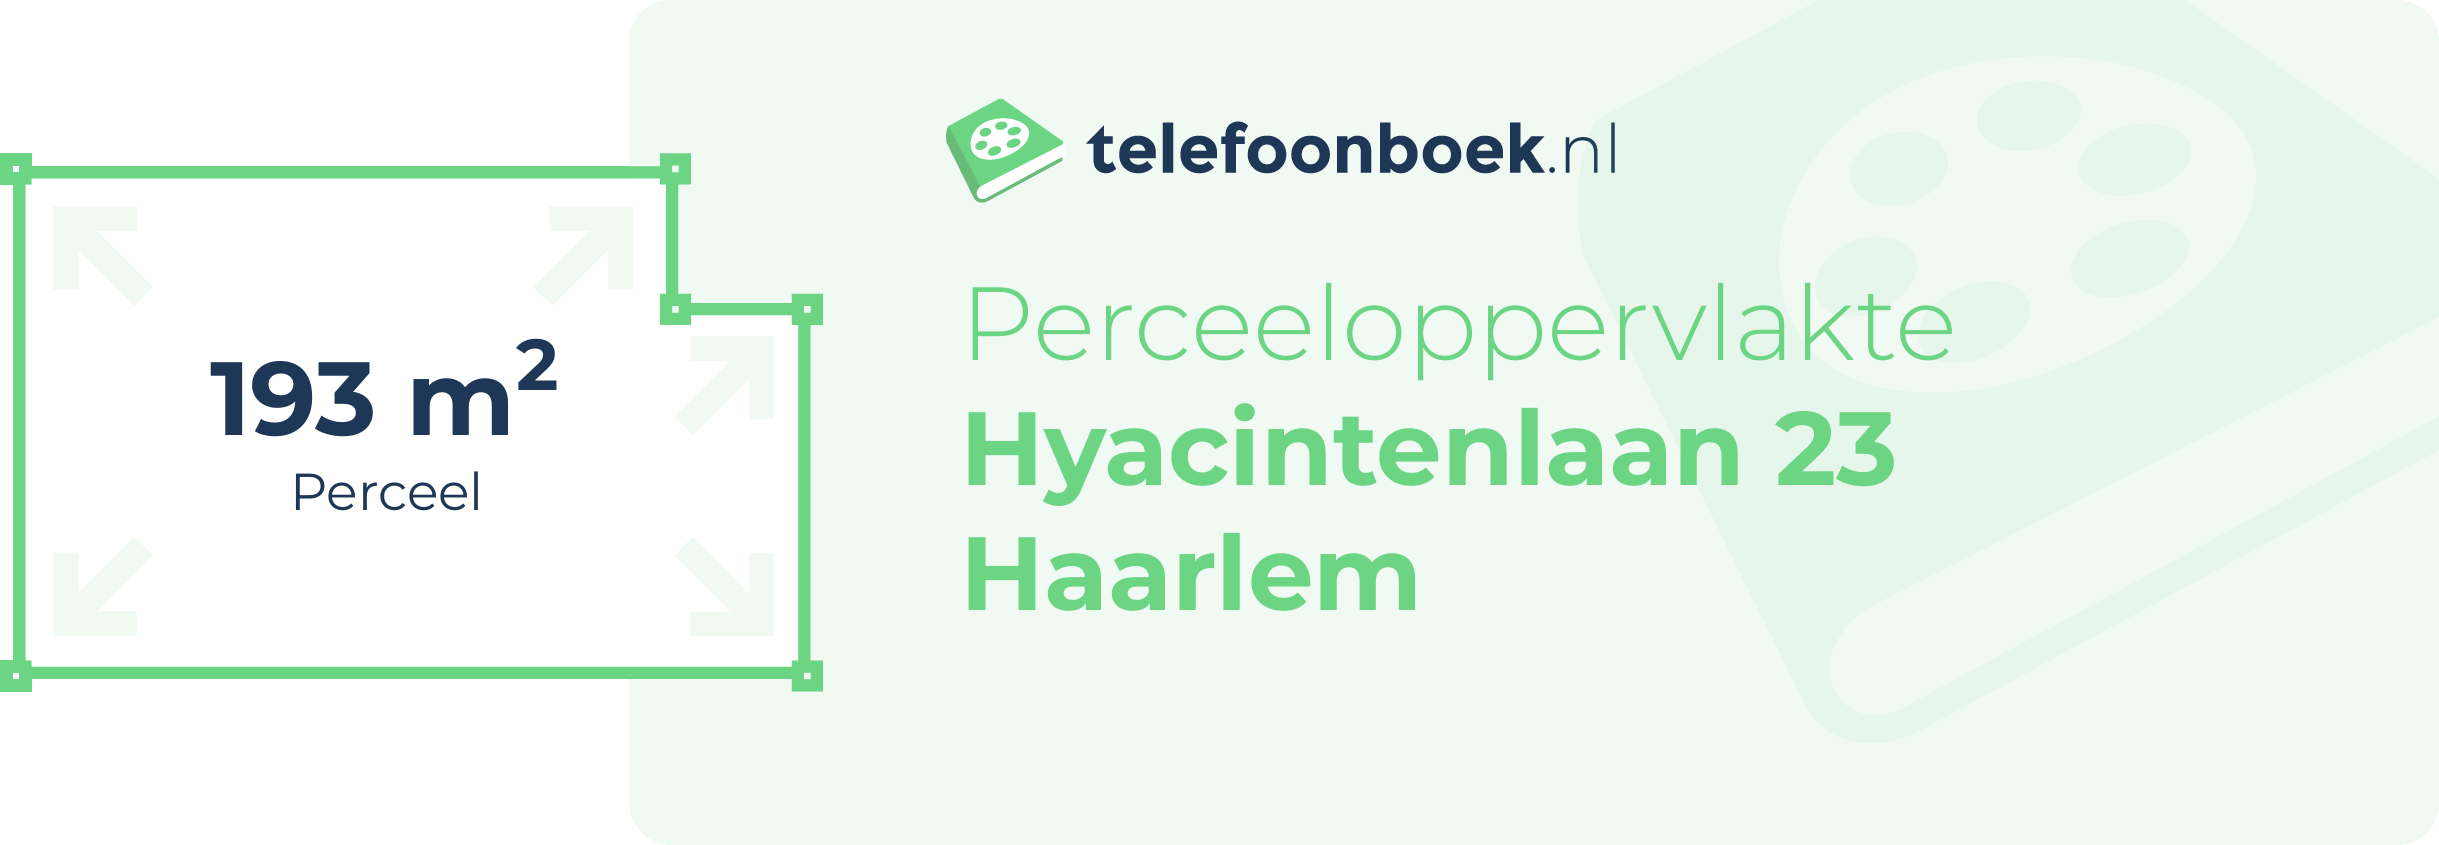 Perceeloppervlakte Hyacintenlaan 23 Haarlem